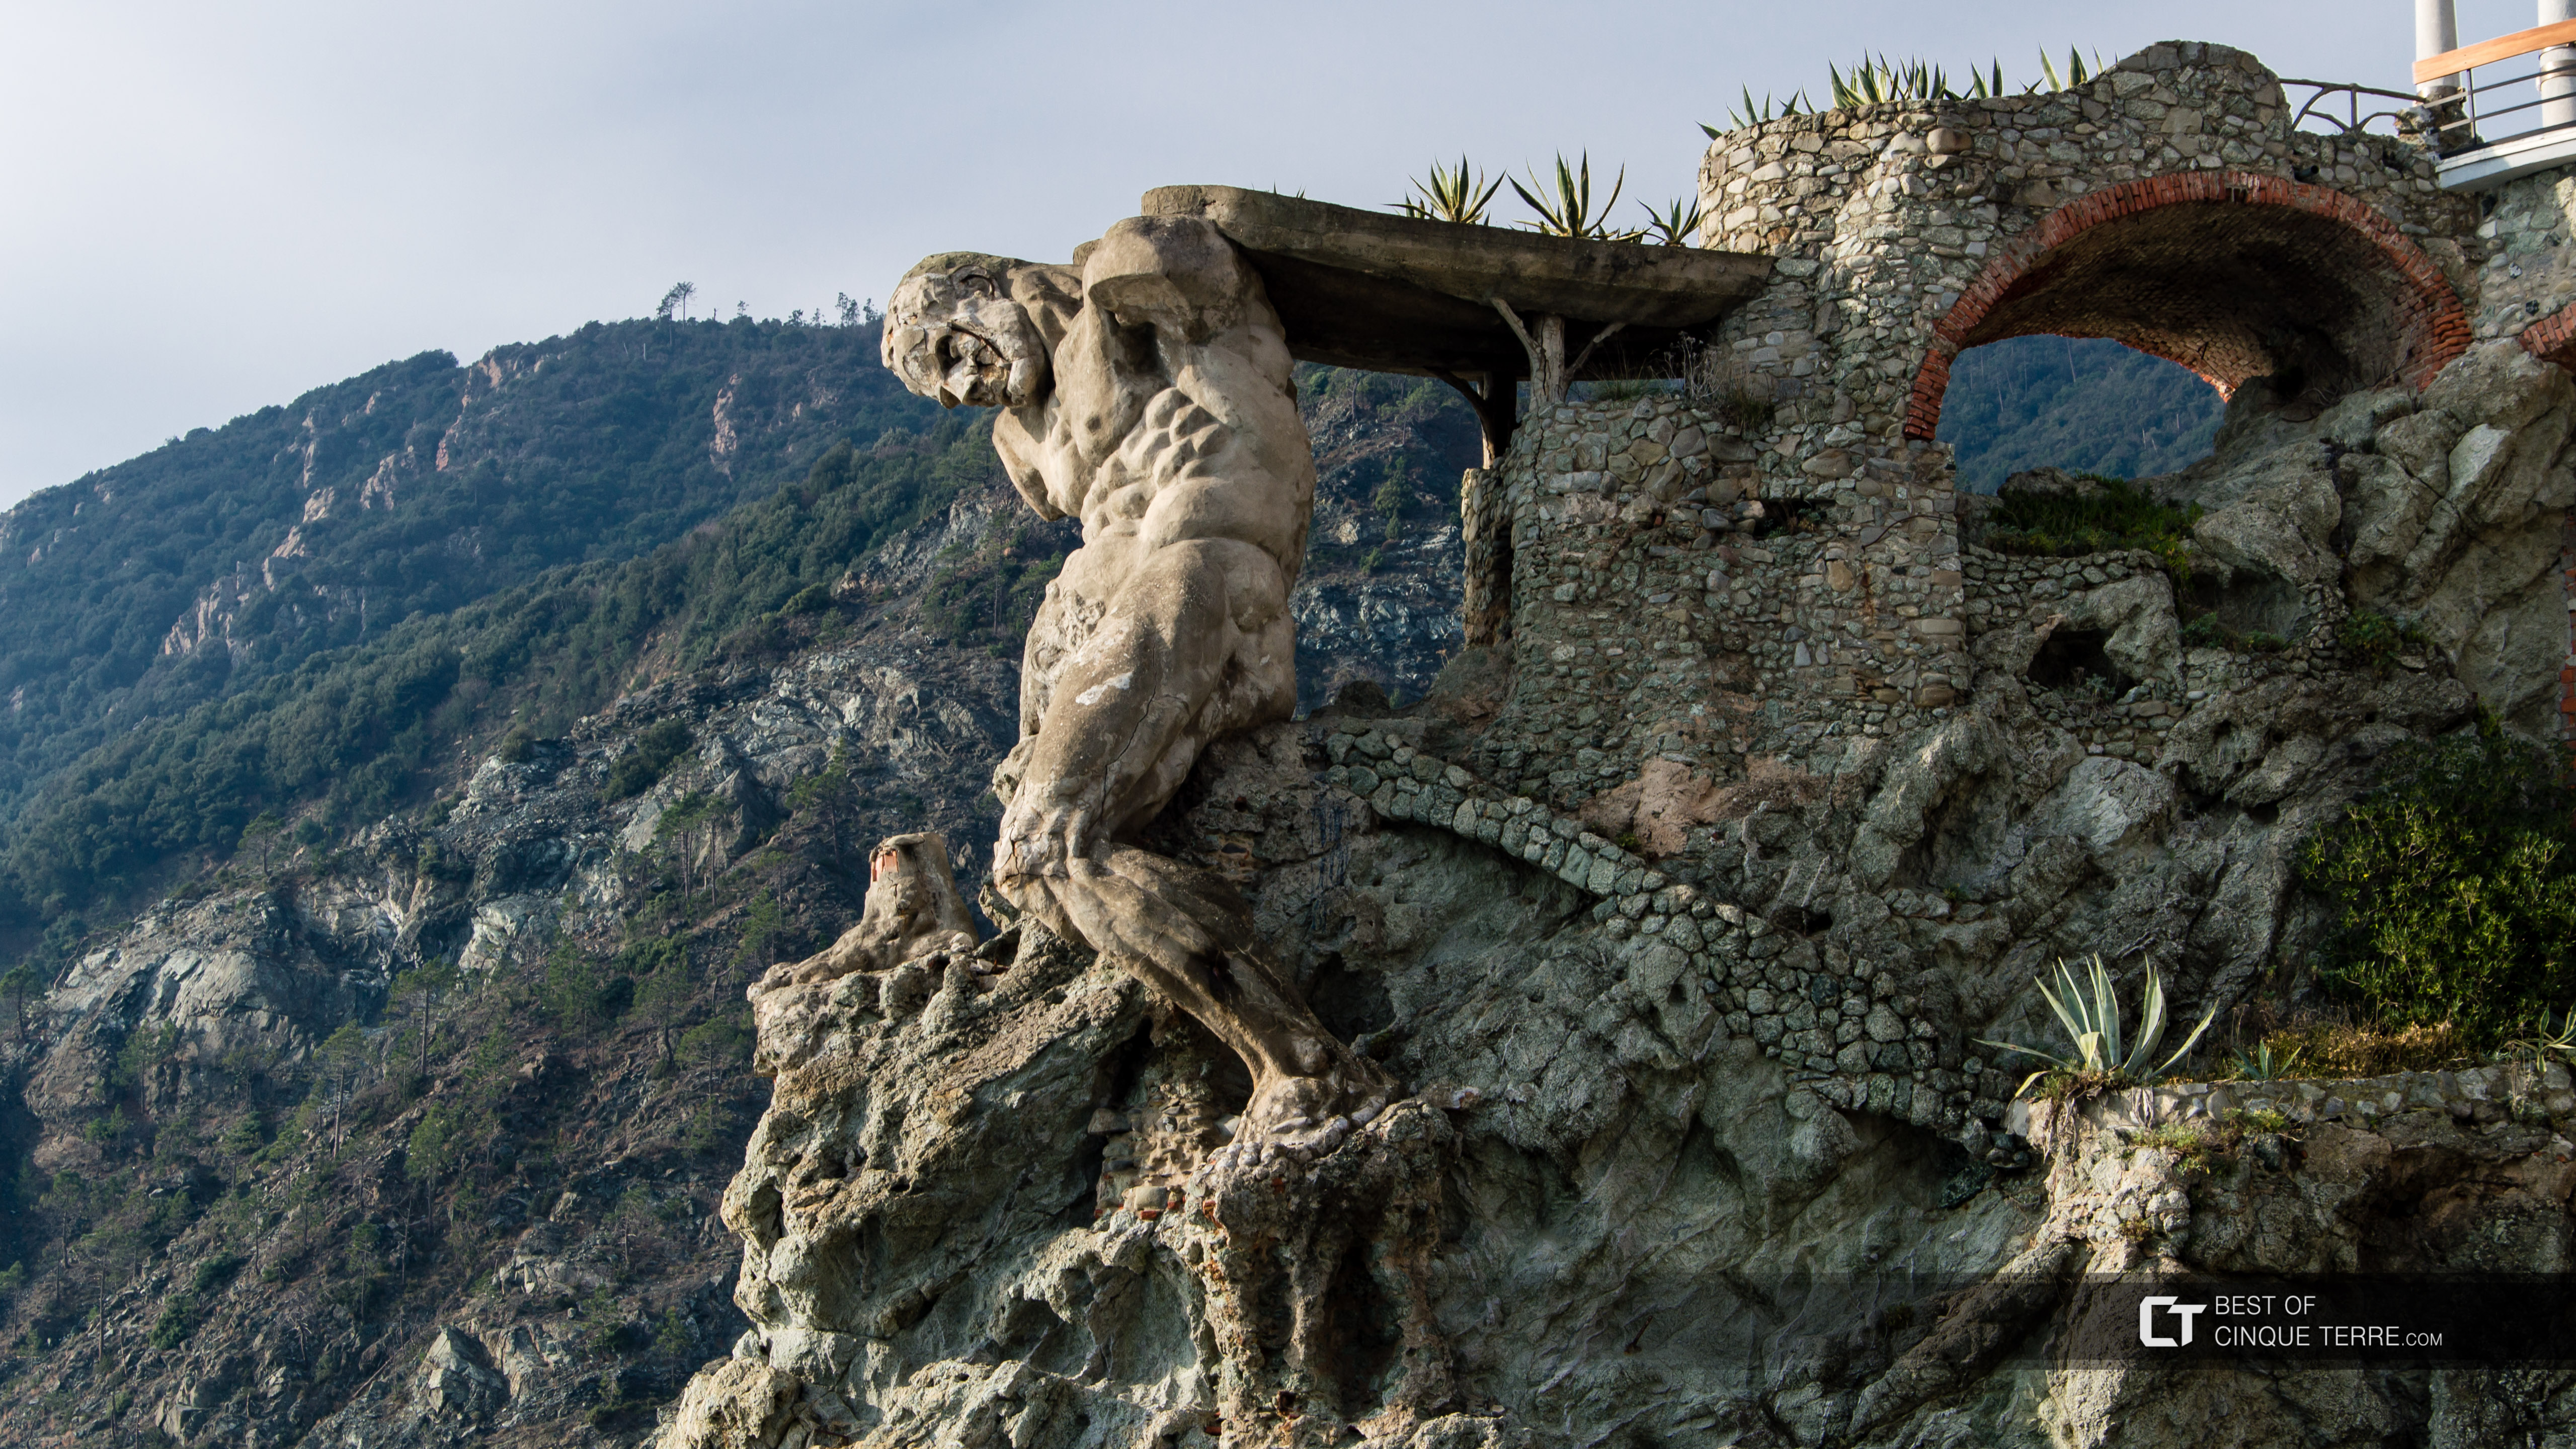 Estátua de Netuno (Gigante), Monterosso al Mare, Cinque Terre, Itália